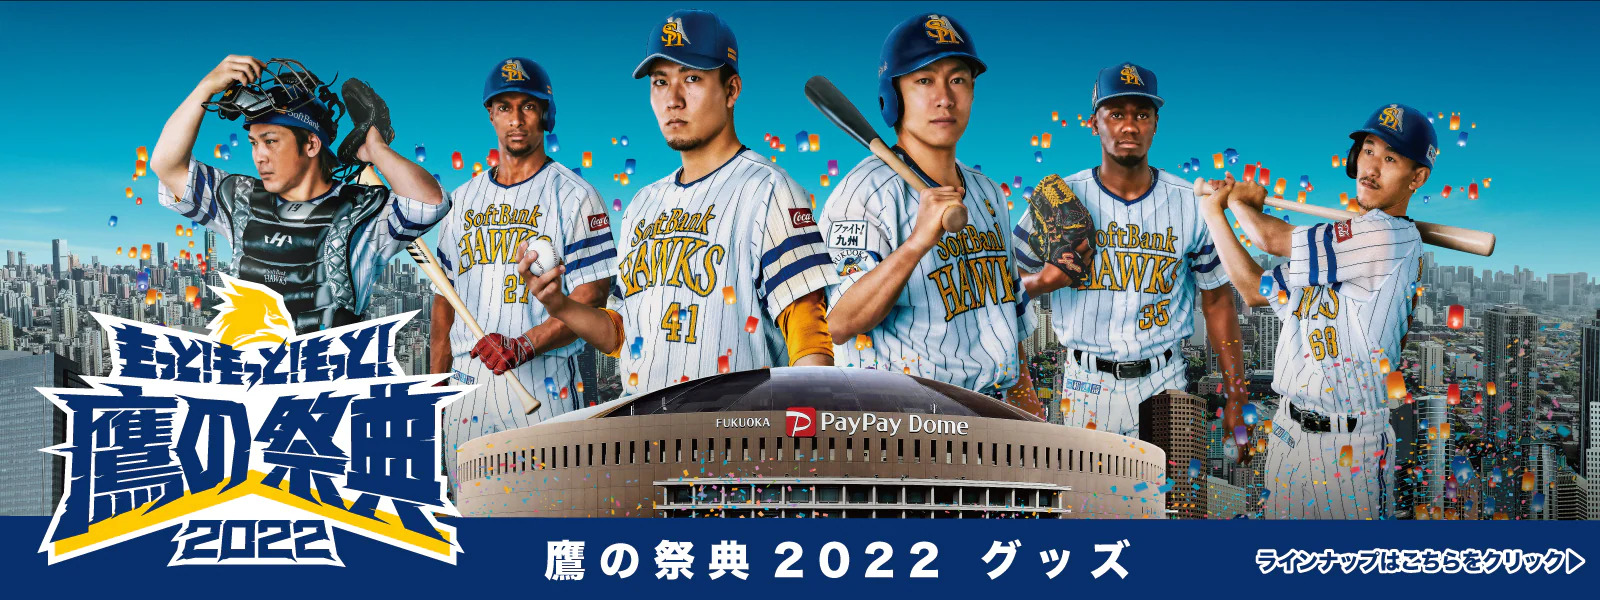 鷹の祭典2022 グッズ_福岡ソフトバンクホークス